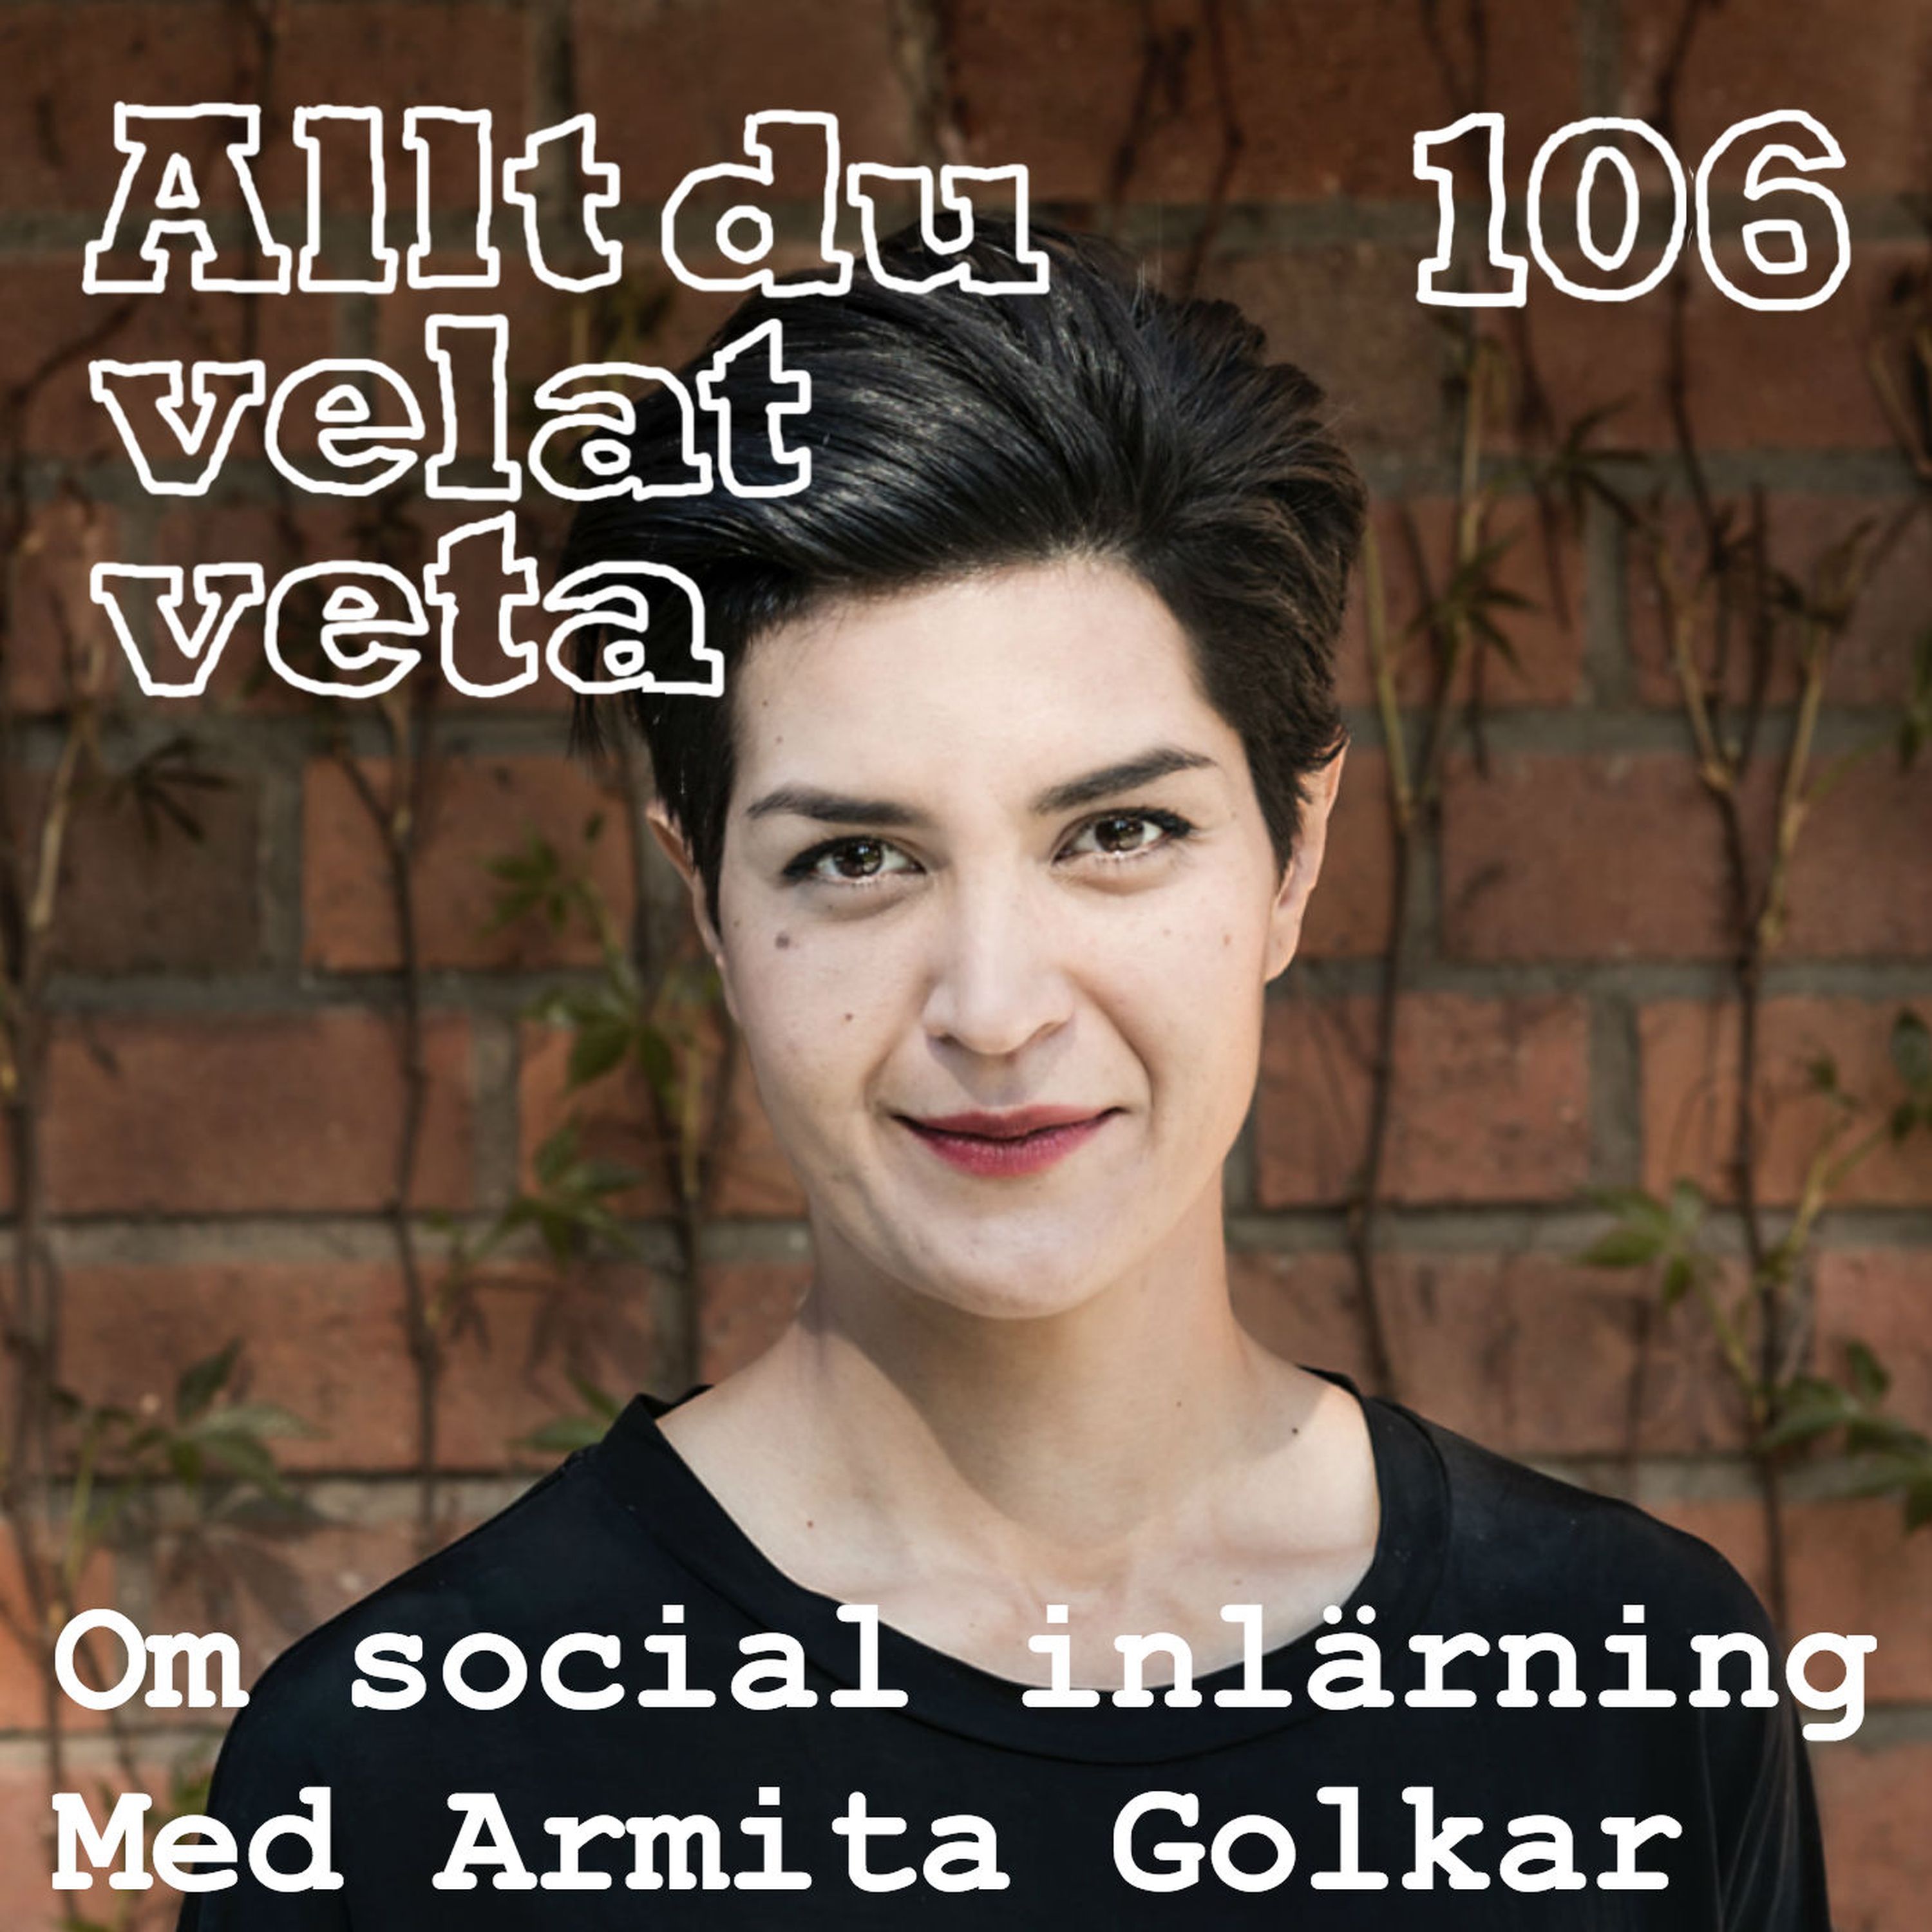 106 Om social inlärning med Armita Golkar